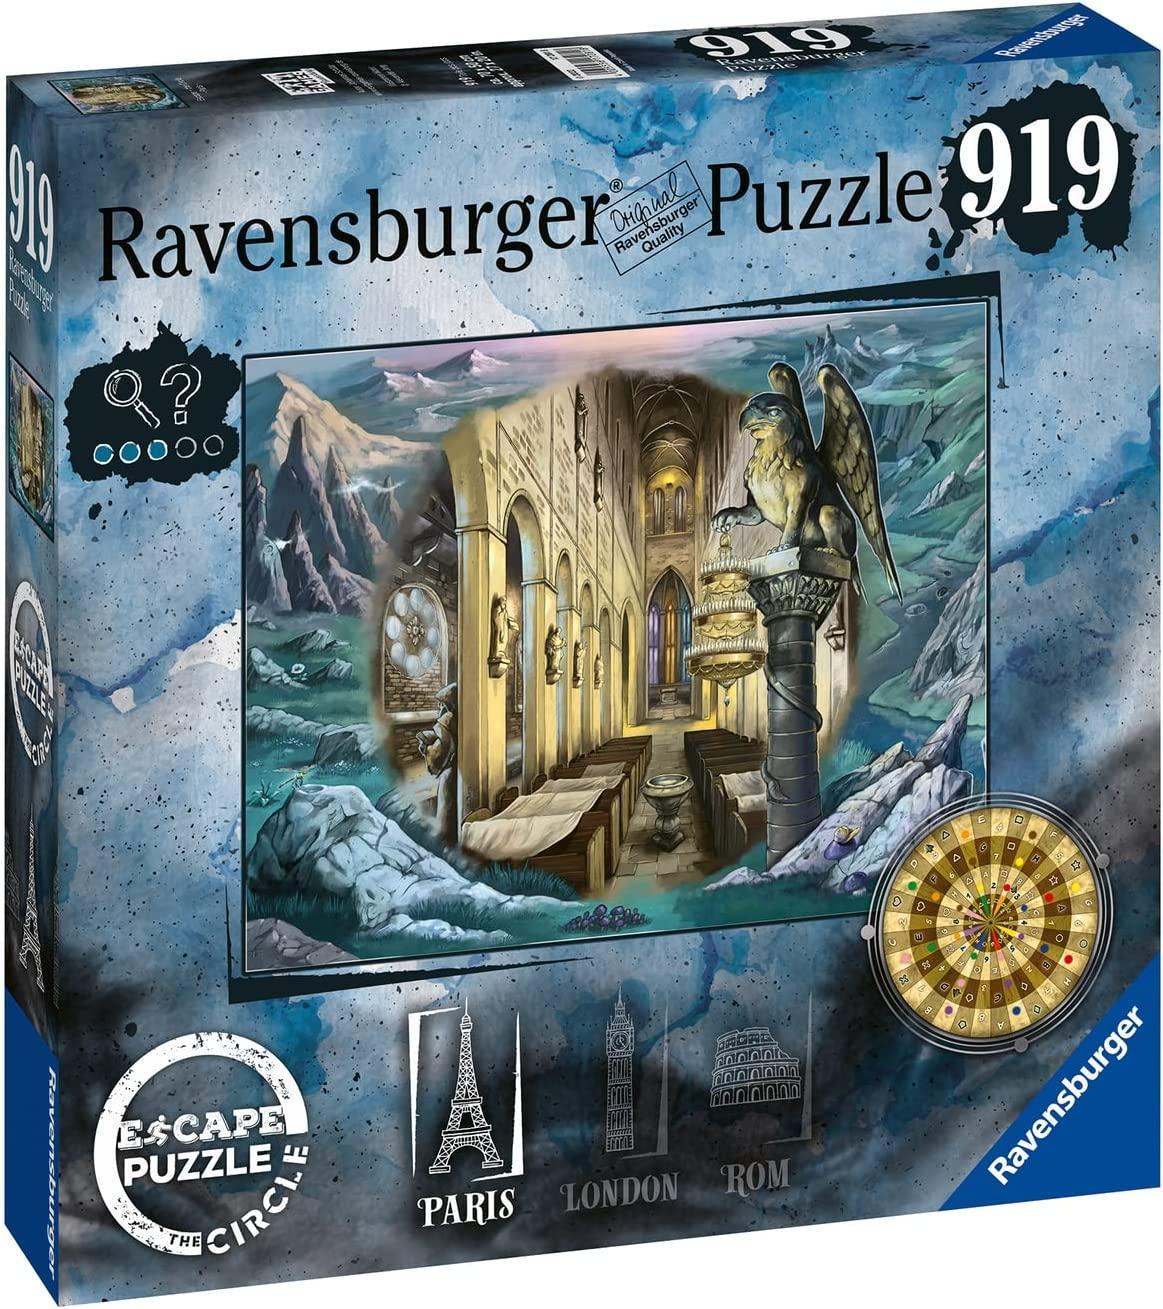 ravensburger escape puzzle 919 pz the circle paris